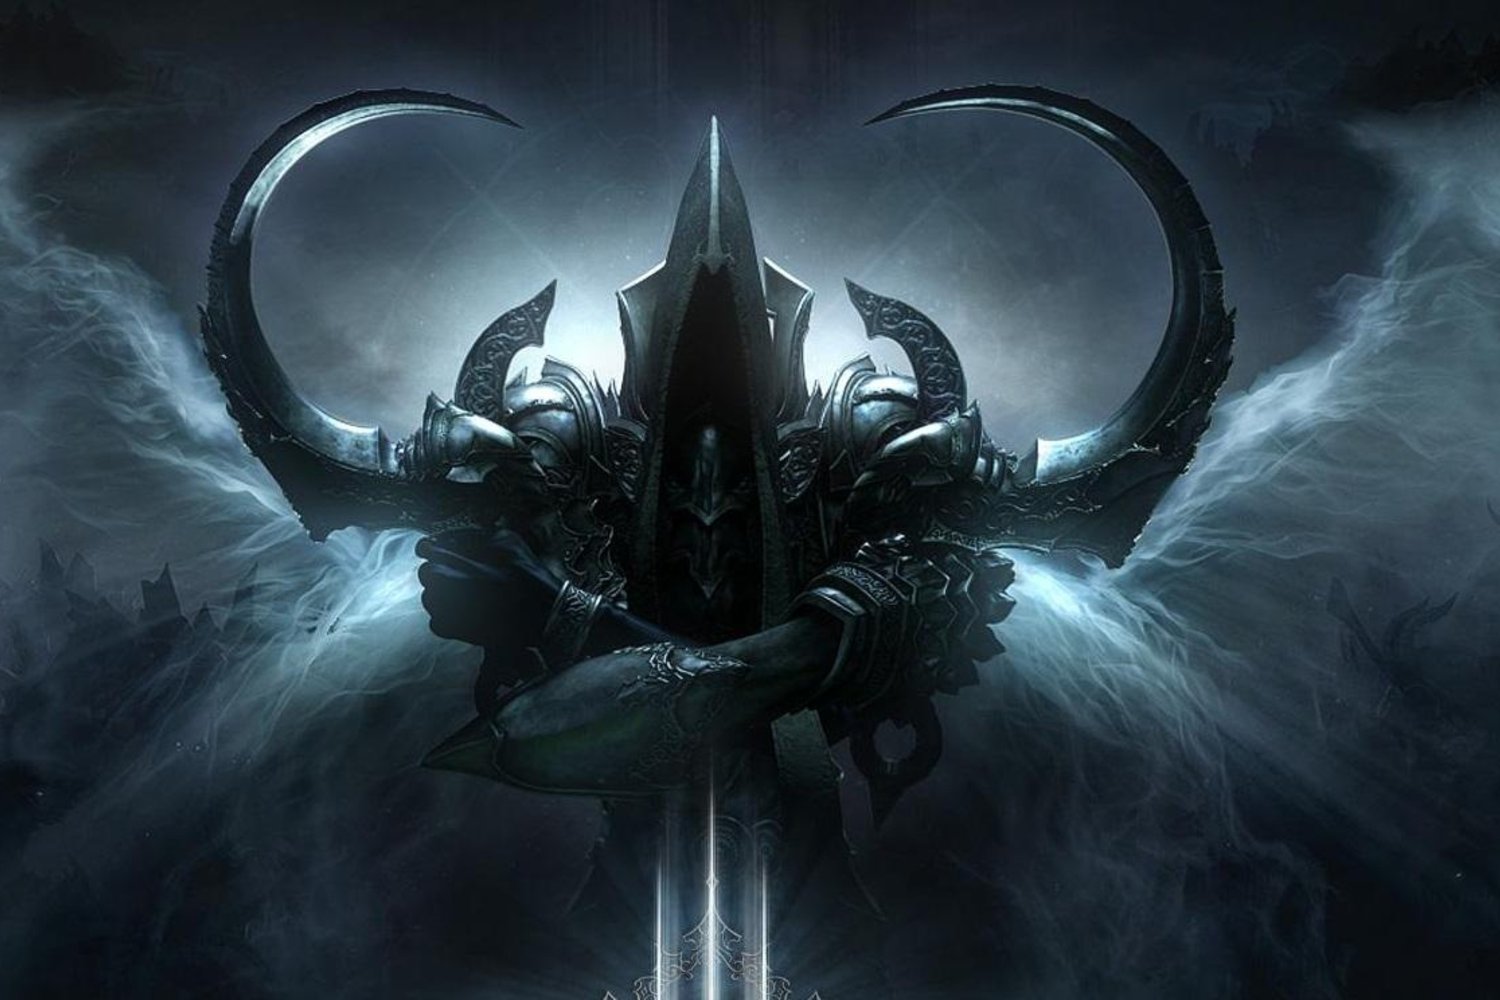 شایعه: عنوان Diablo 4 در دست ساخت است و قرار بوده در BlizzCon 2018 معرفی شود